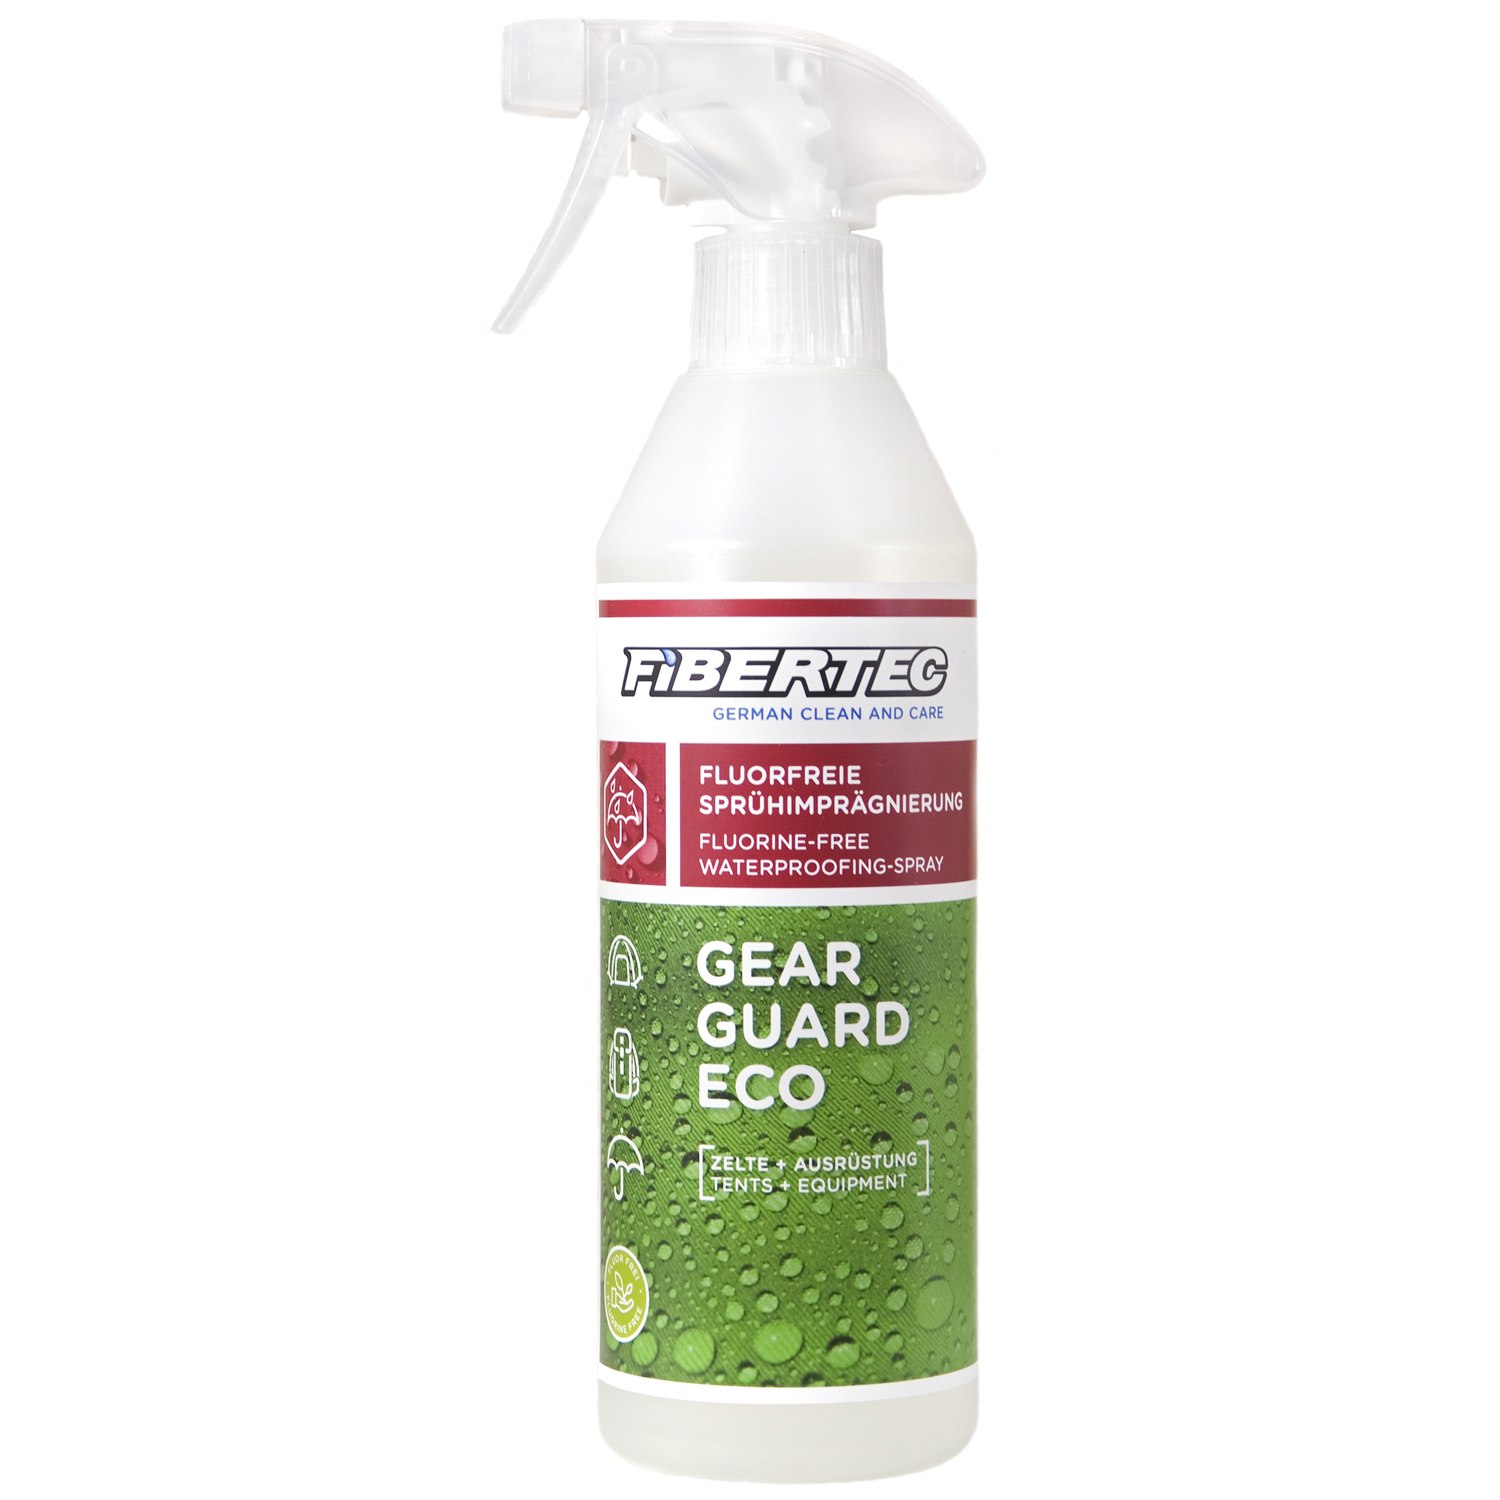 Productfoto van Fibertec Gear Guard Eco Impregnation - 500ml